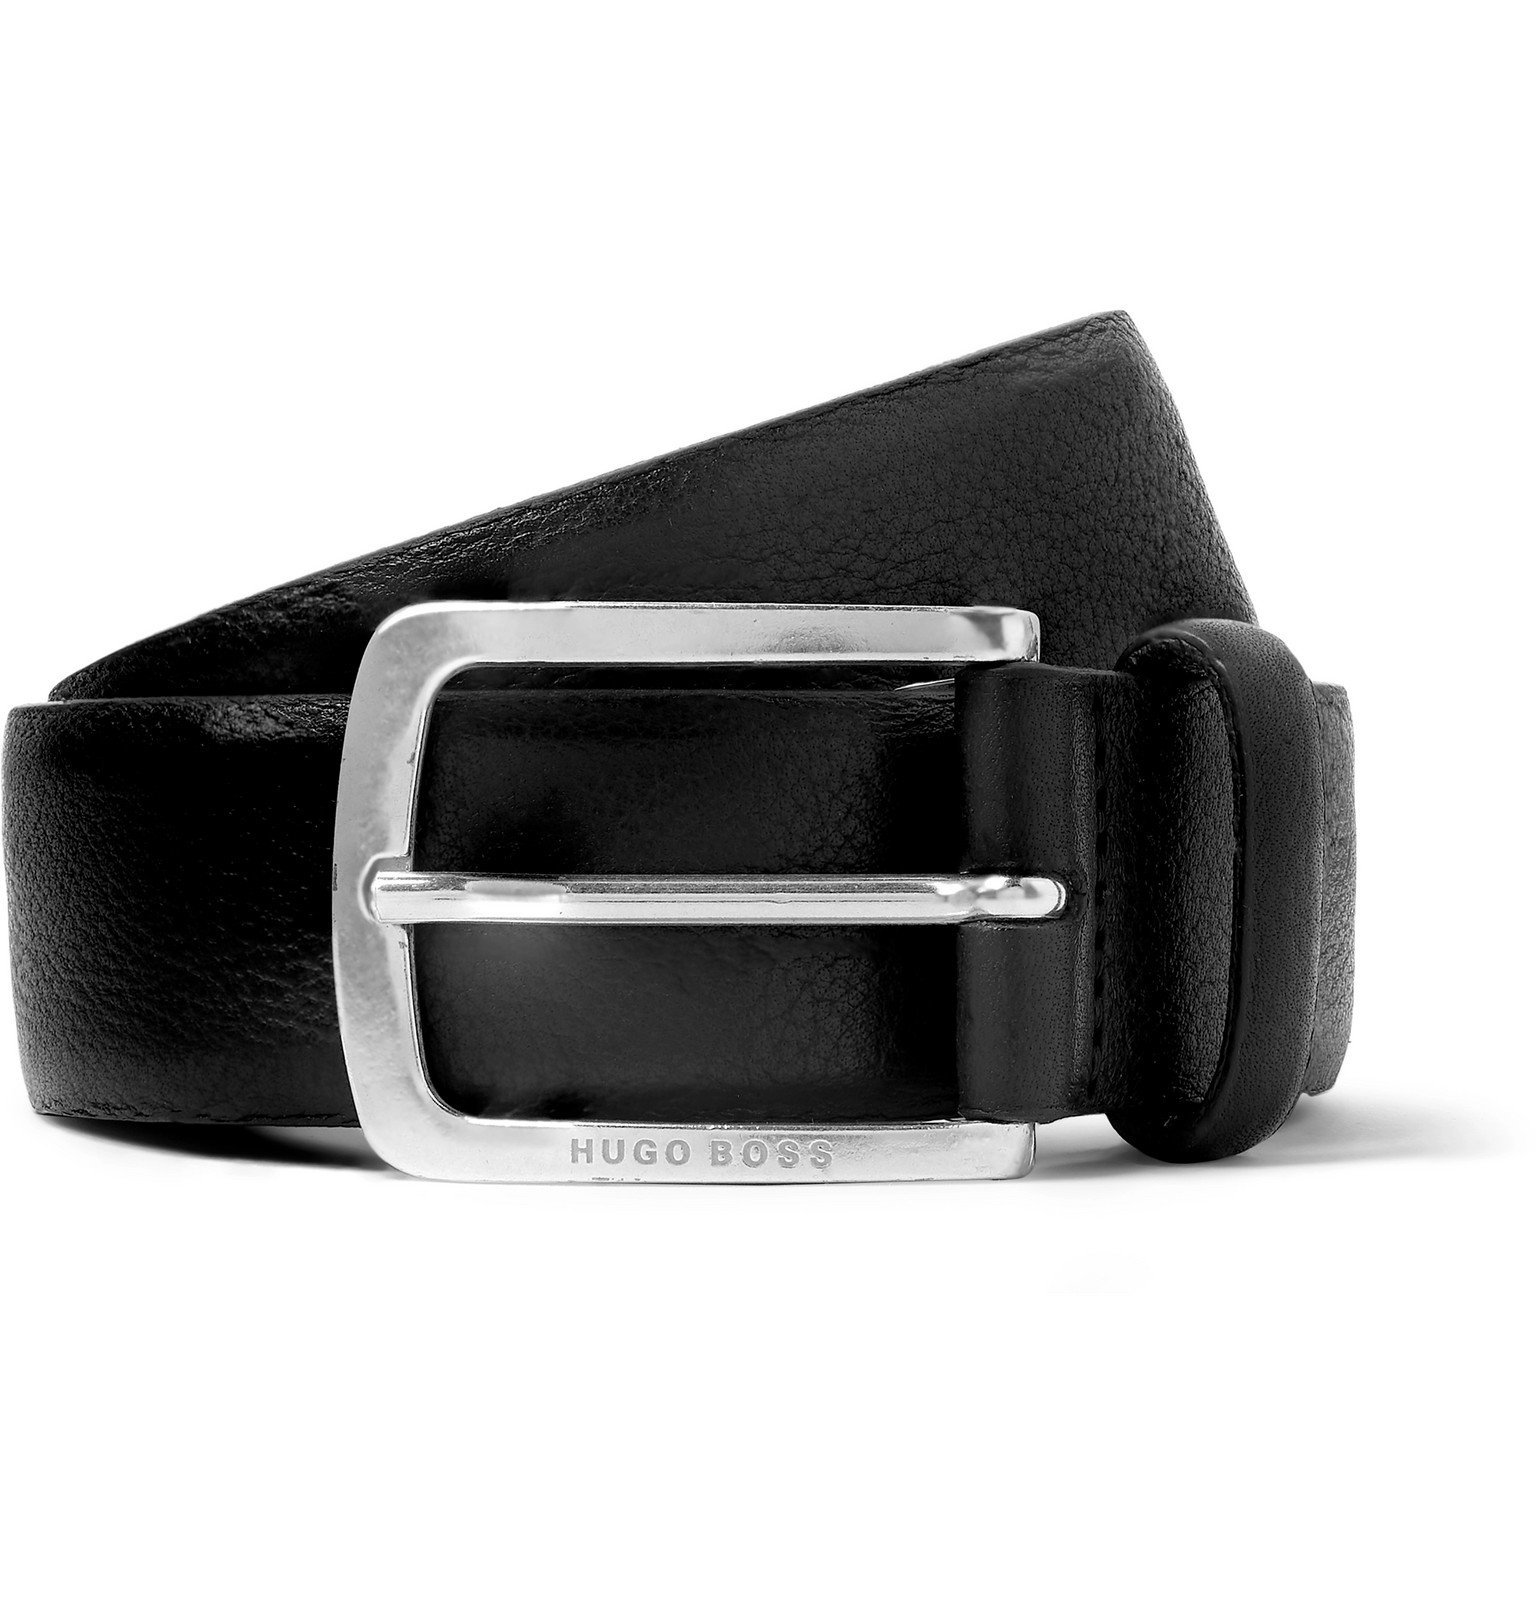 Hugo Boss 35cm Black Jor Leather Belt Black Hugo Boss 6089